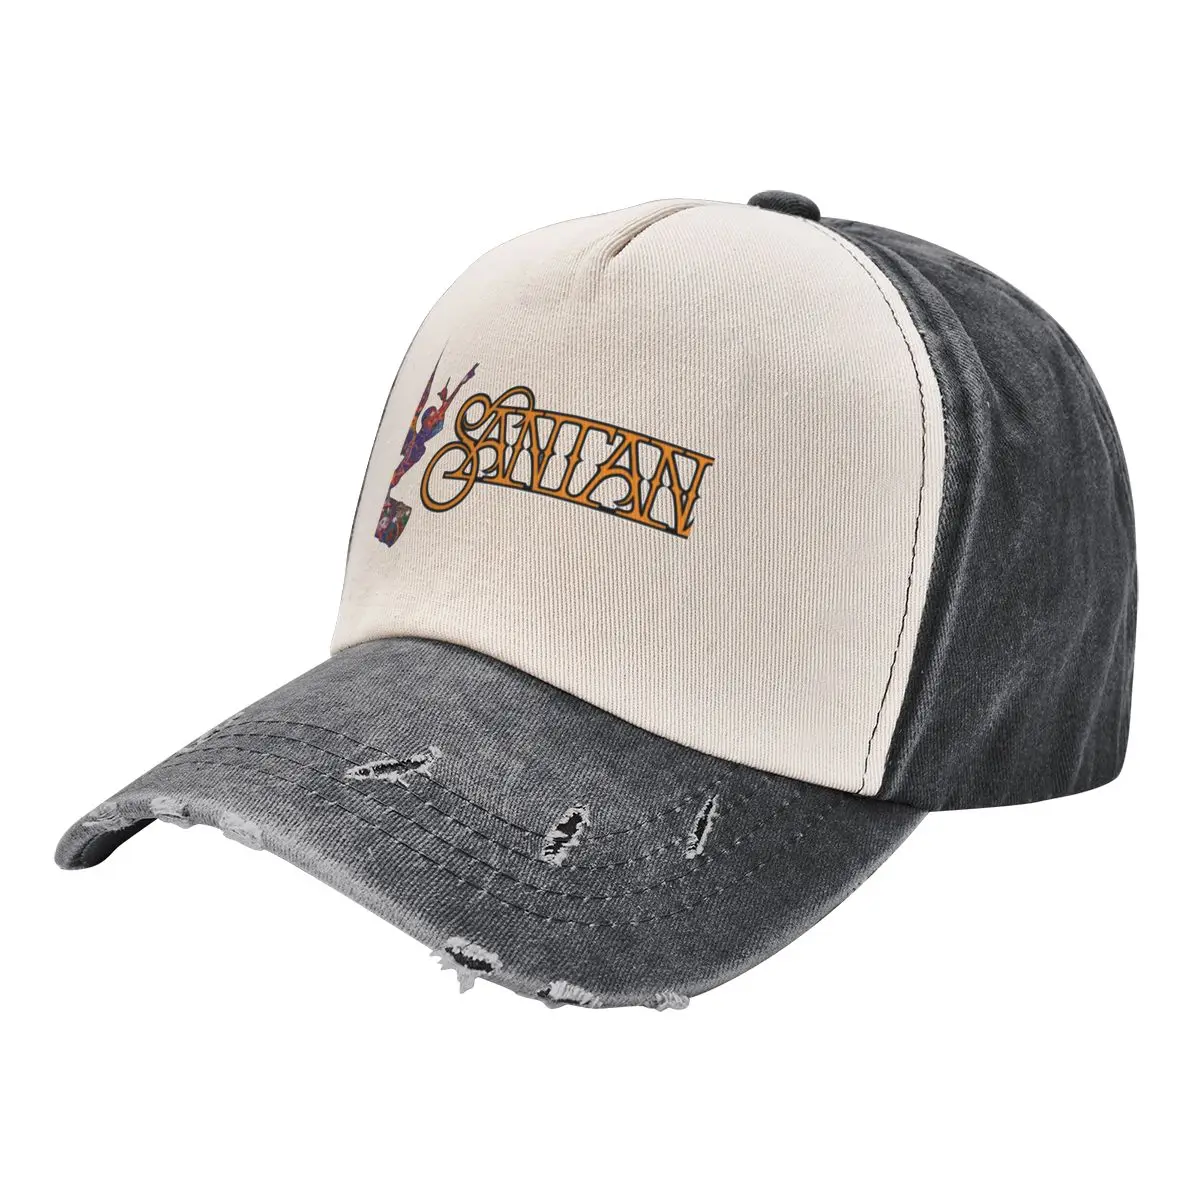 

santana fly Baseball Cap Golf Wear Big Size Hat Sun Cap For Girls Men's